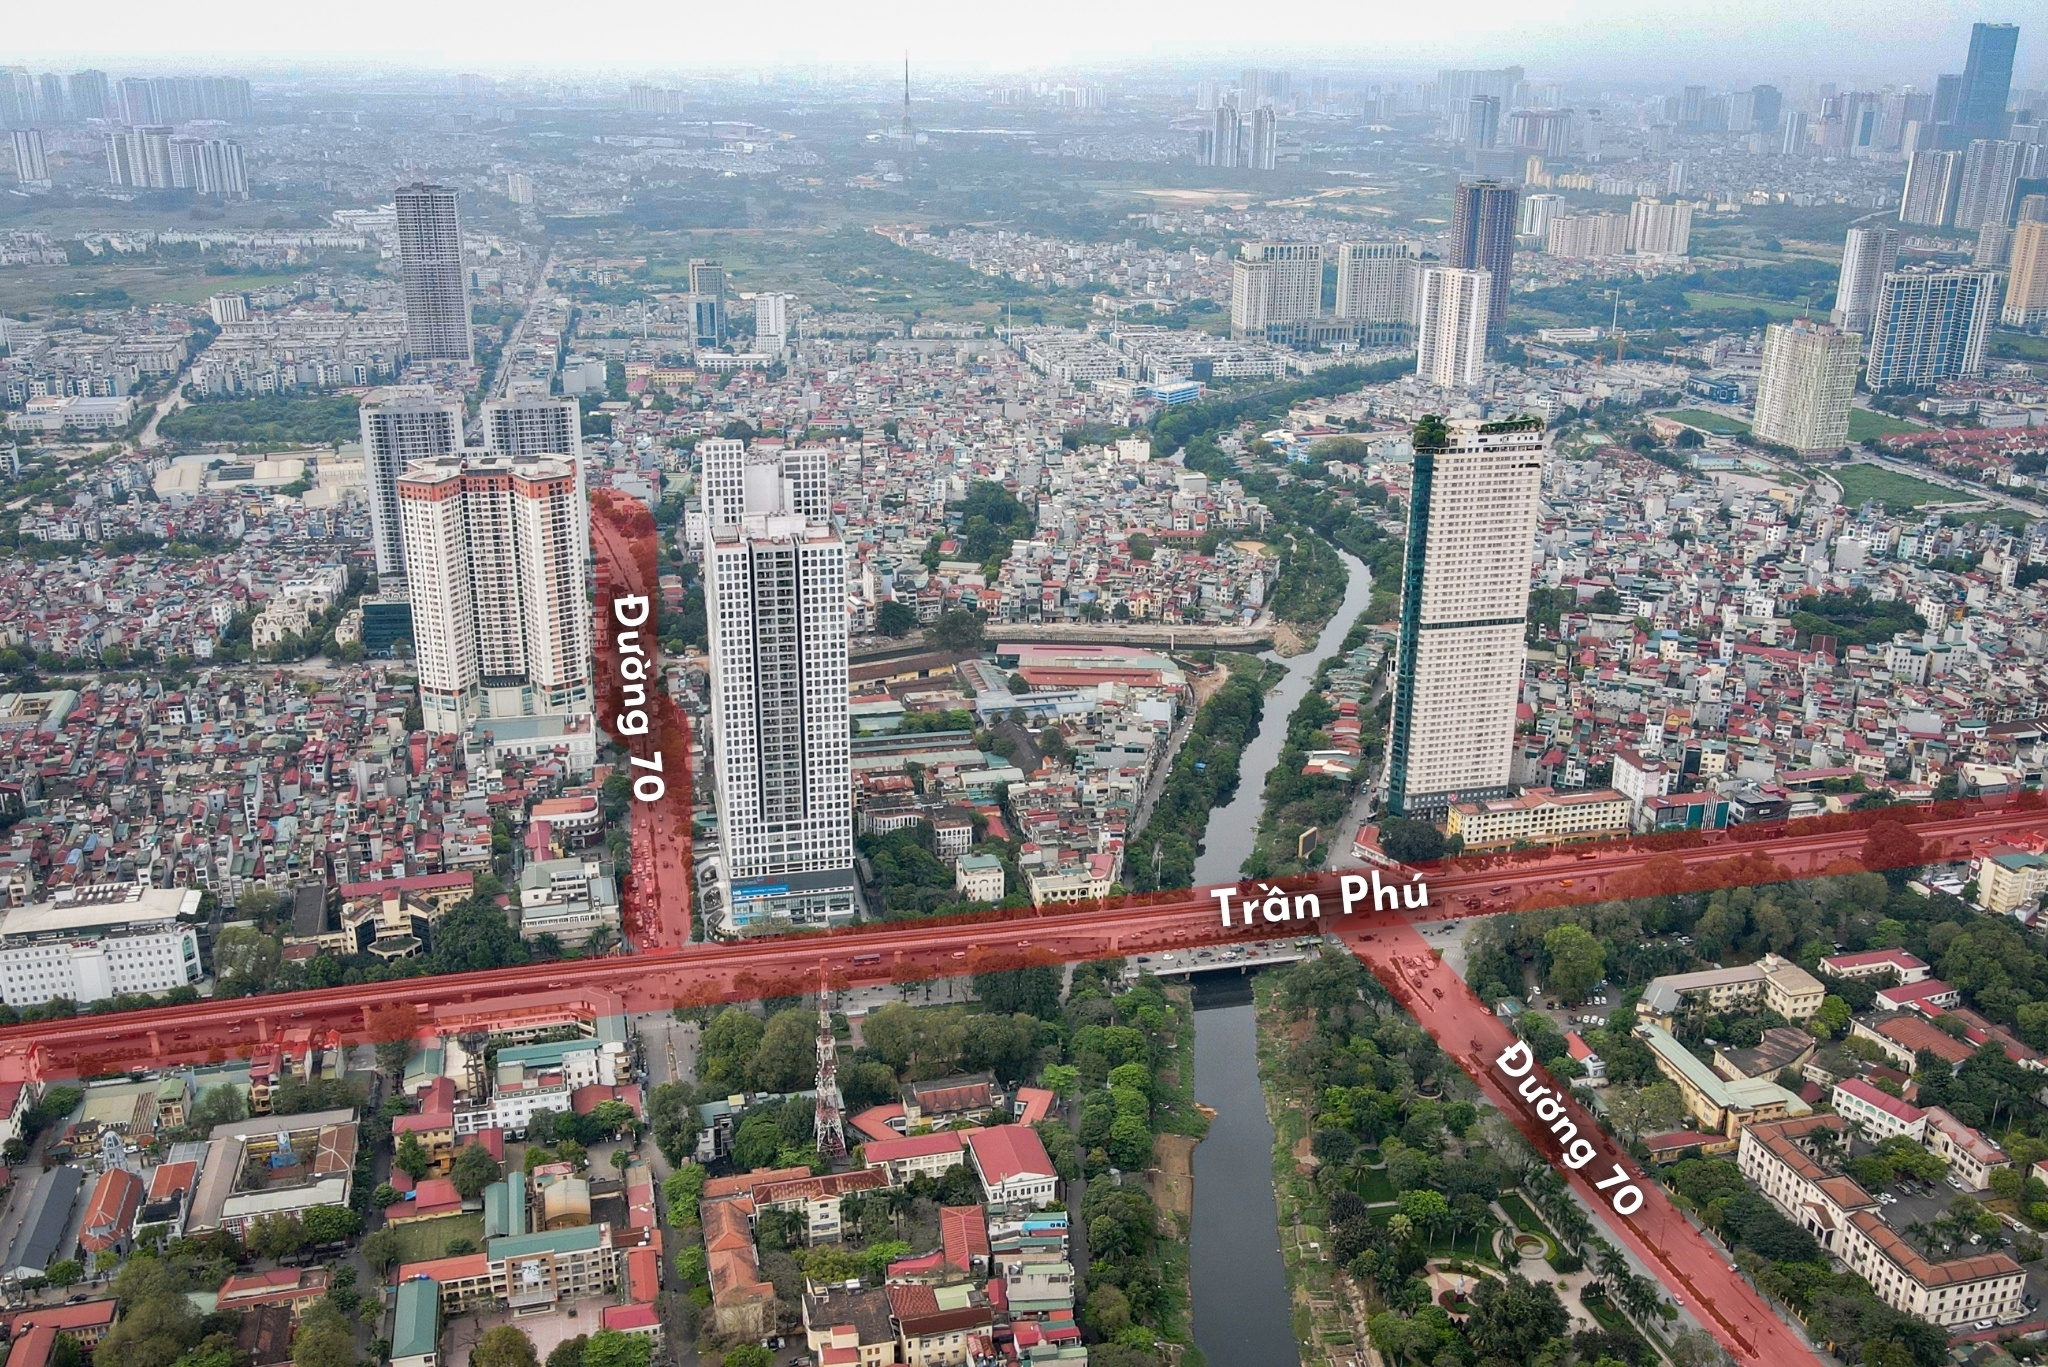 Hiện trạng tuyến đường ở Hà Nội sắp được chi 5.500 tỷ đồng để cải tạo - ảnh 4